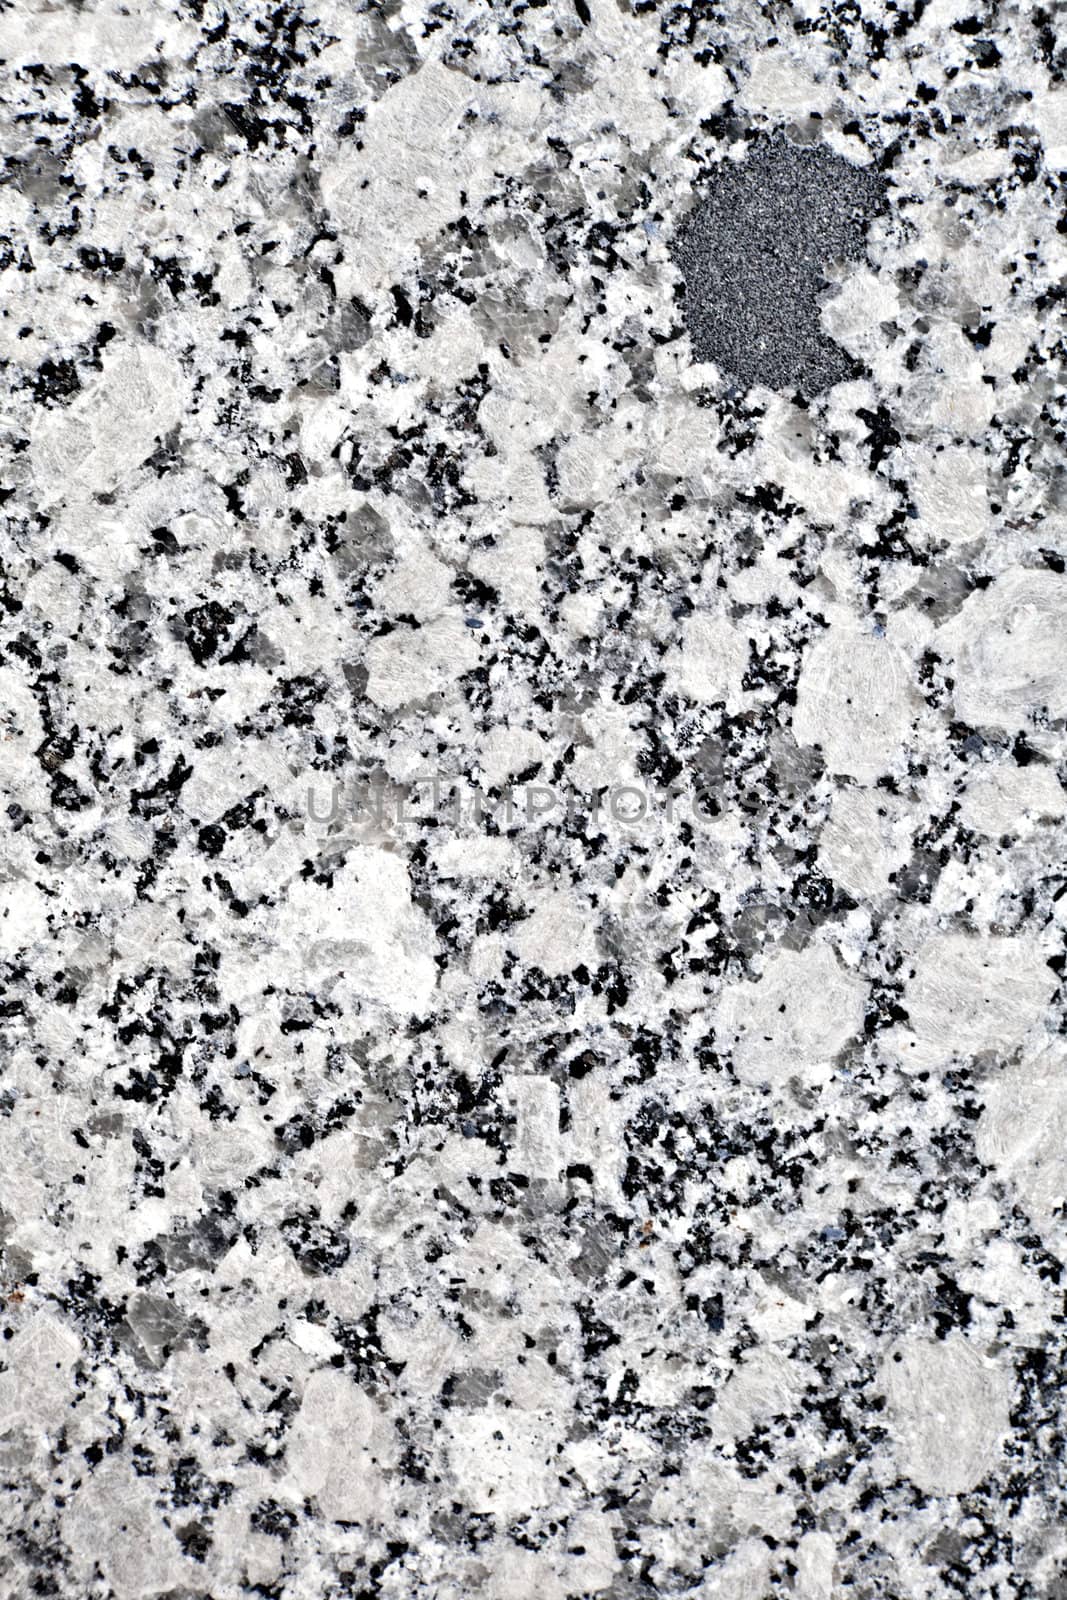 Close up detail of granite stone material.